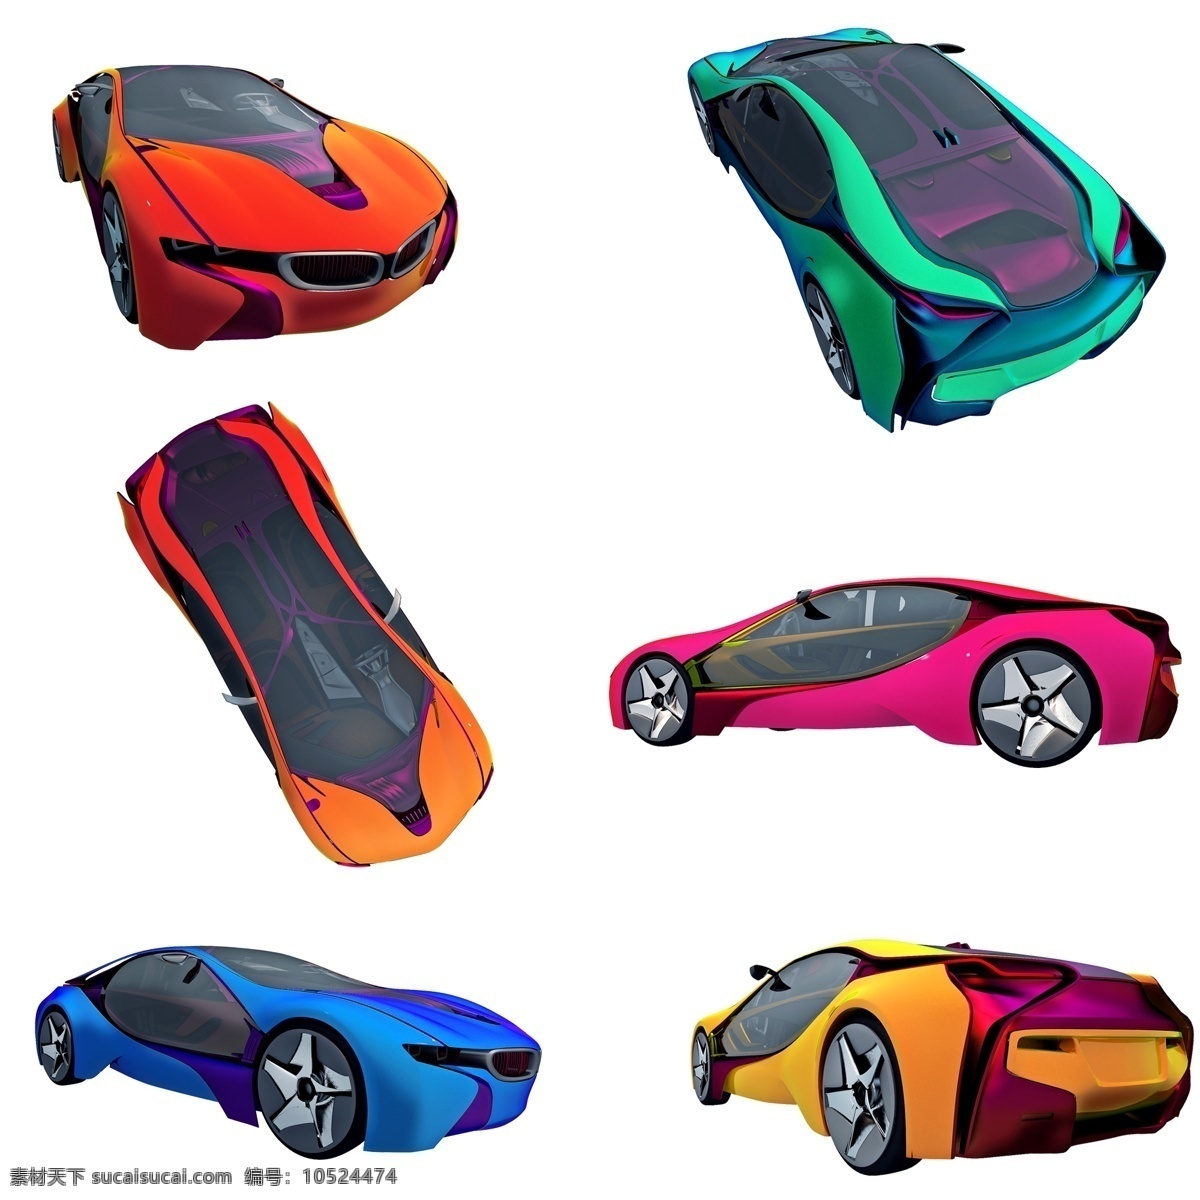 立体 质感 轿车 套 图 科幻 渐变色 精致 炫酷 png图 创意 套图 小车 汽车 跑车 豪车